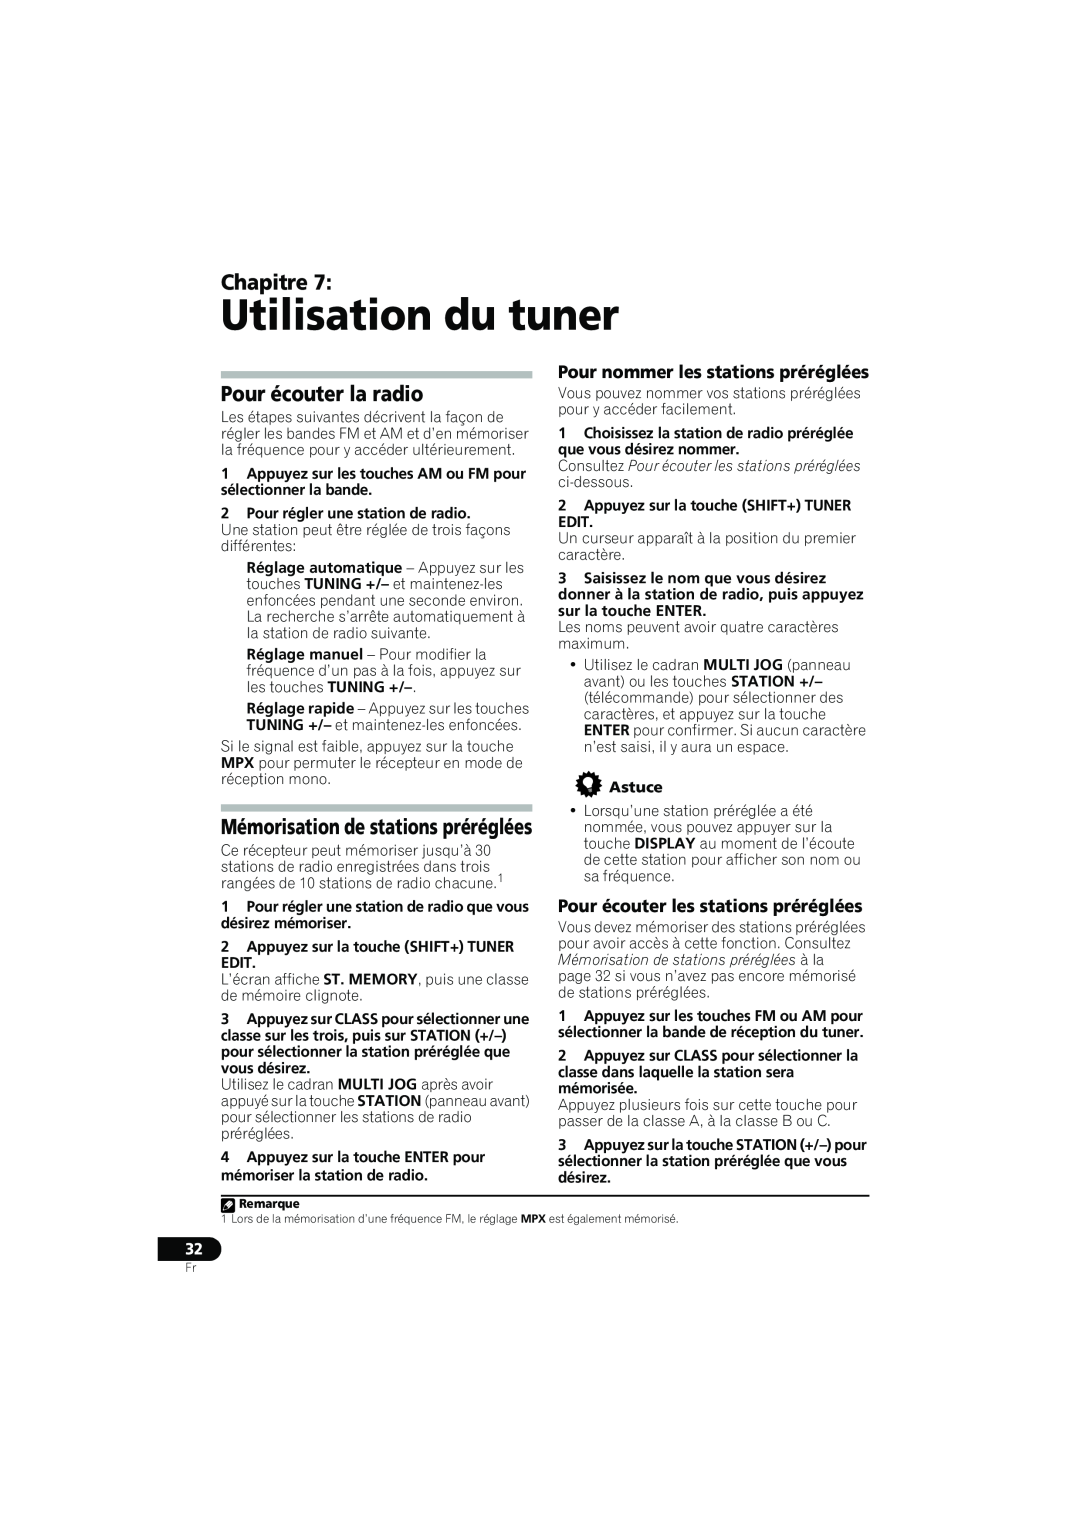 Pioneer XRE3138-A manual Utilisation du tuner, Pour écouter la radio, Mémorisation de stations préréglées, Chapitre 